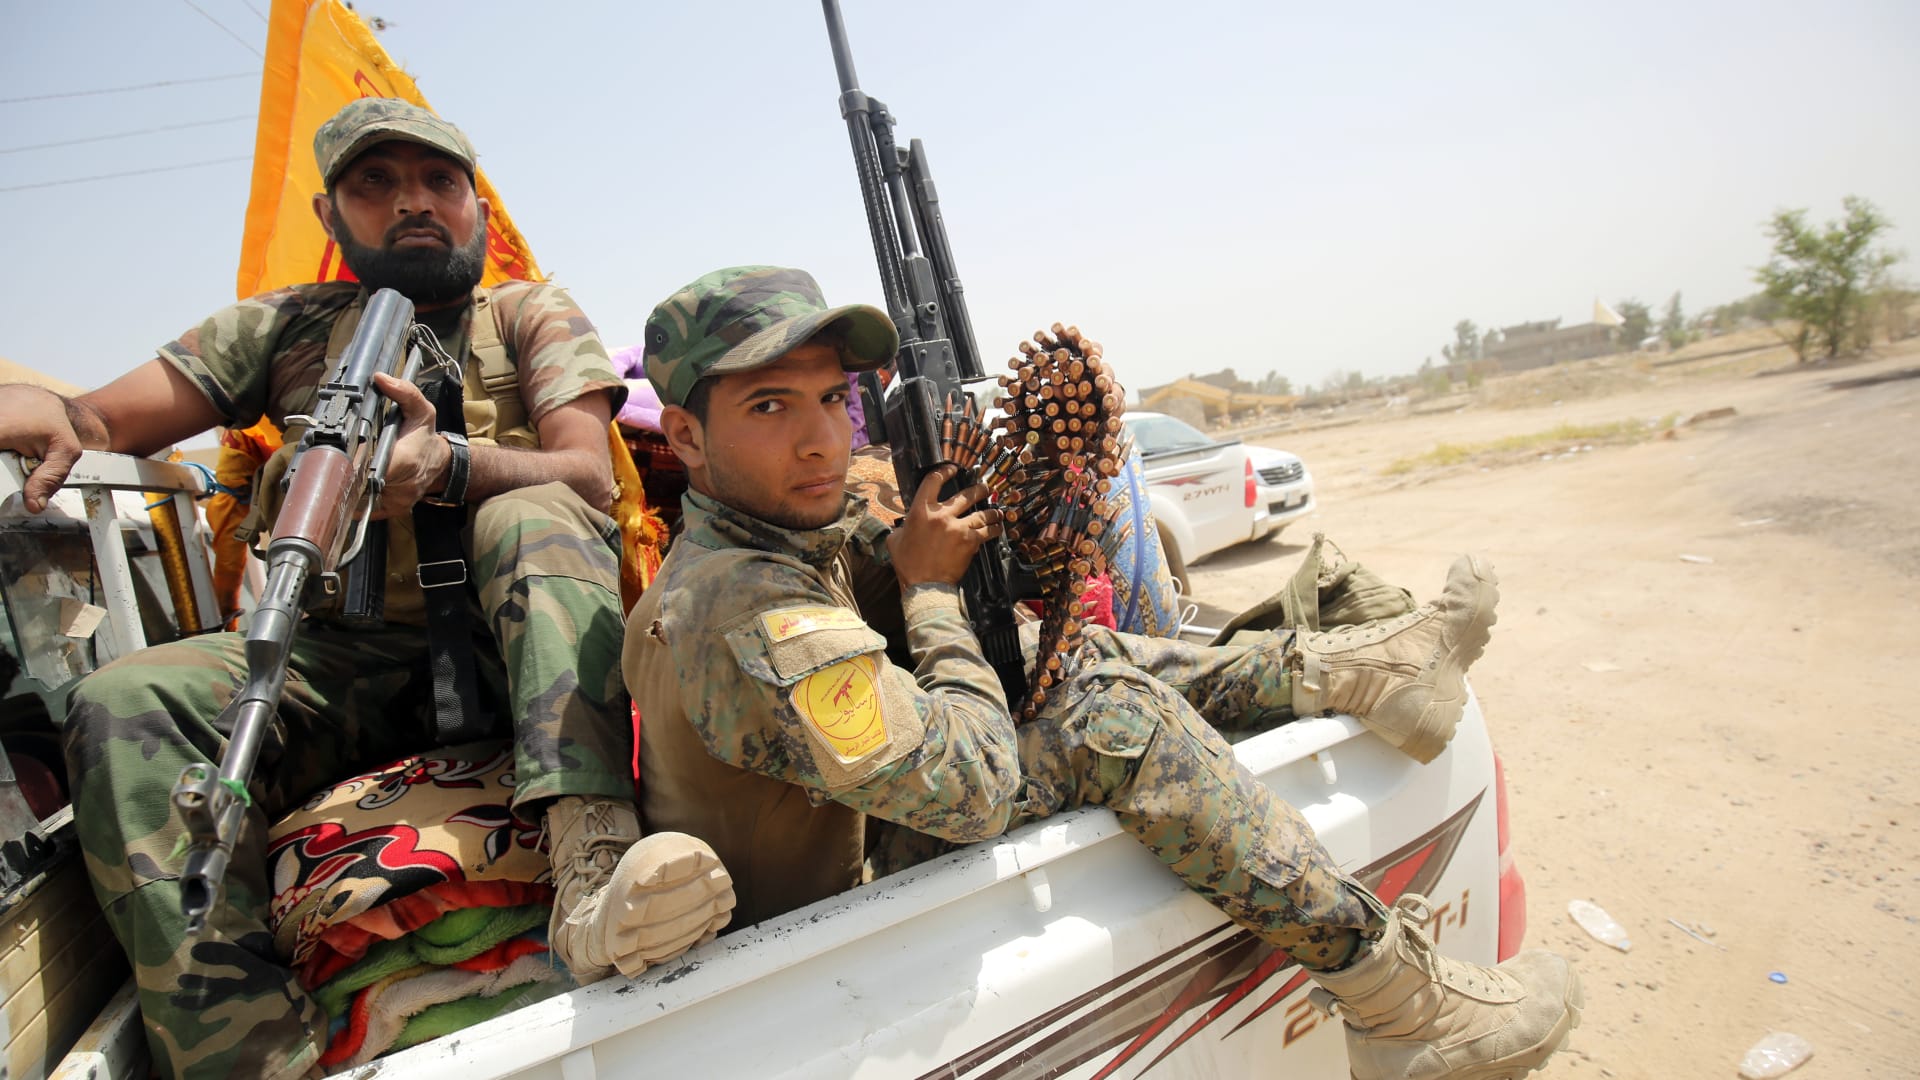 بالصور: زخم معركة "تحرير الفلوجة".. ووزير الدفاع العراقي يشيد بـ"الانهيار التام لعصابات داعش"